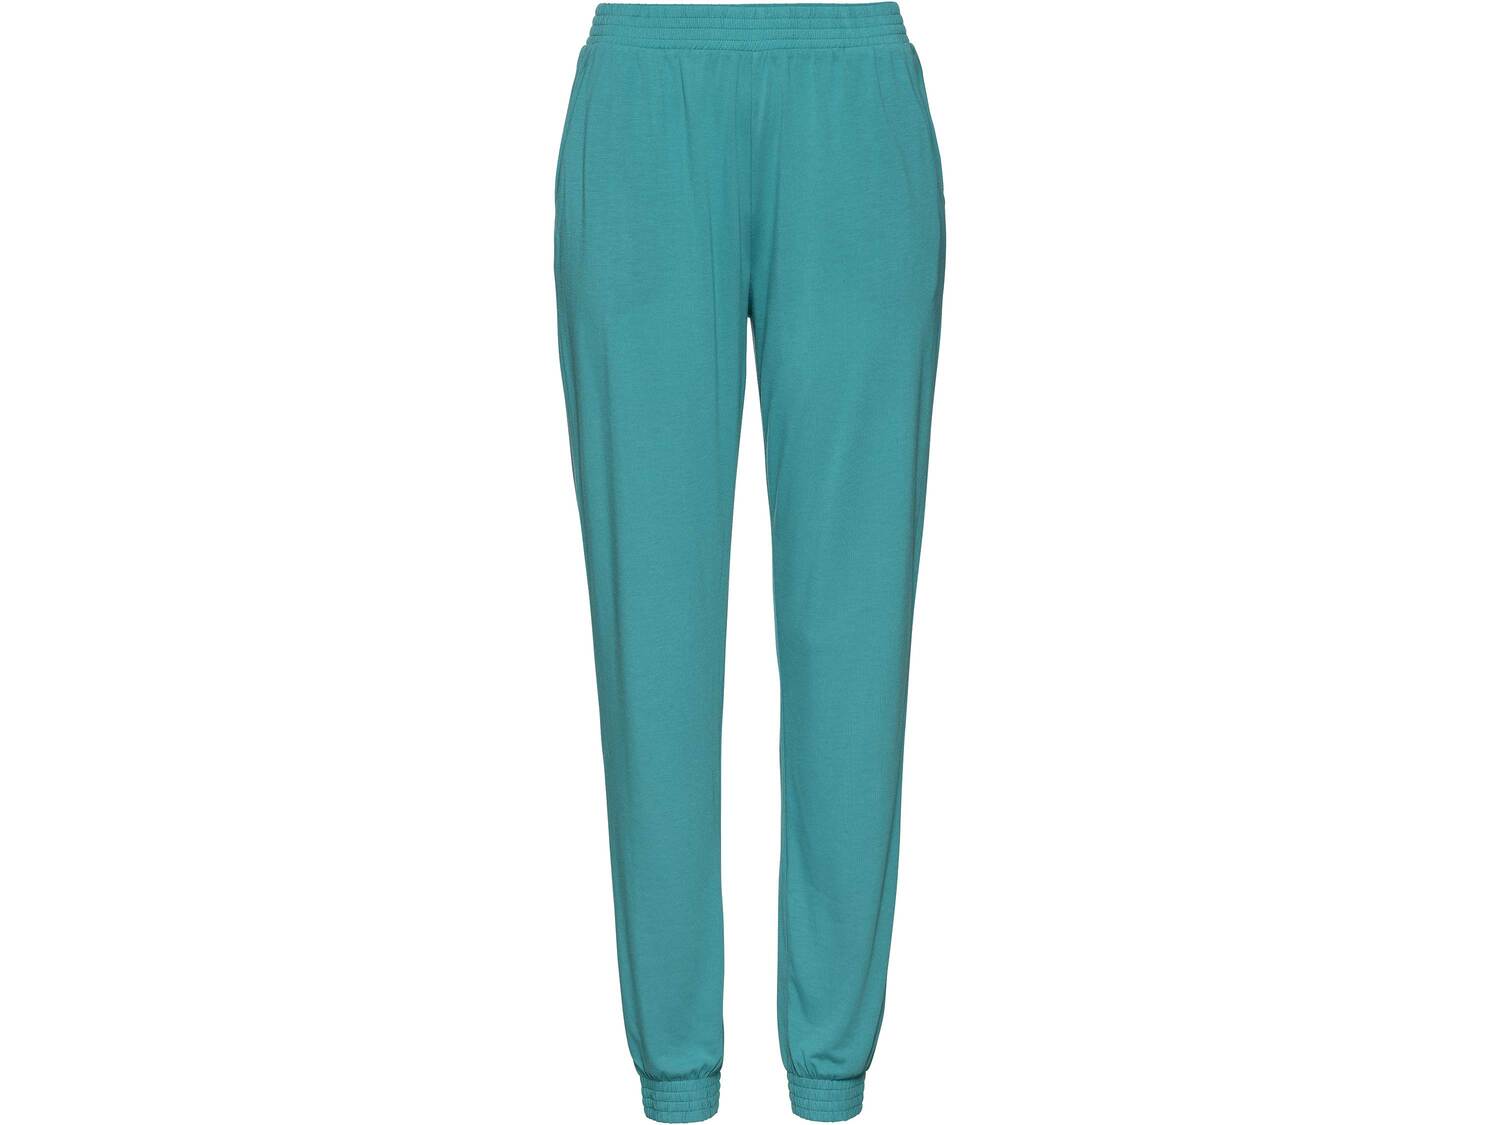 Spodnie damskie z wiskozą Esmara, cena 29,99 PLN 
3 kolory 
- rozmiary: XS-L*
- ...